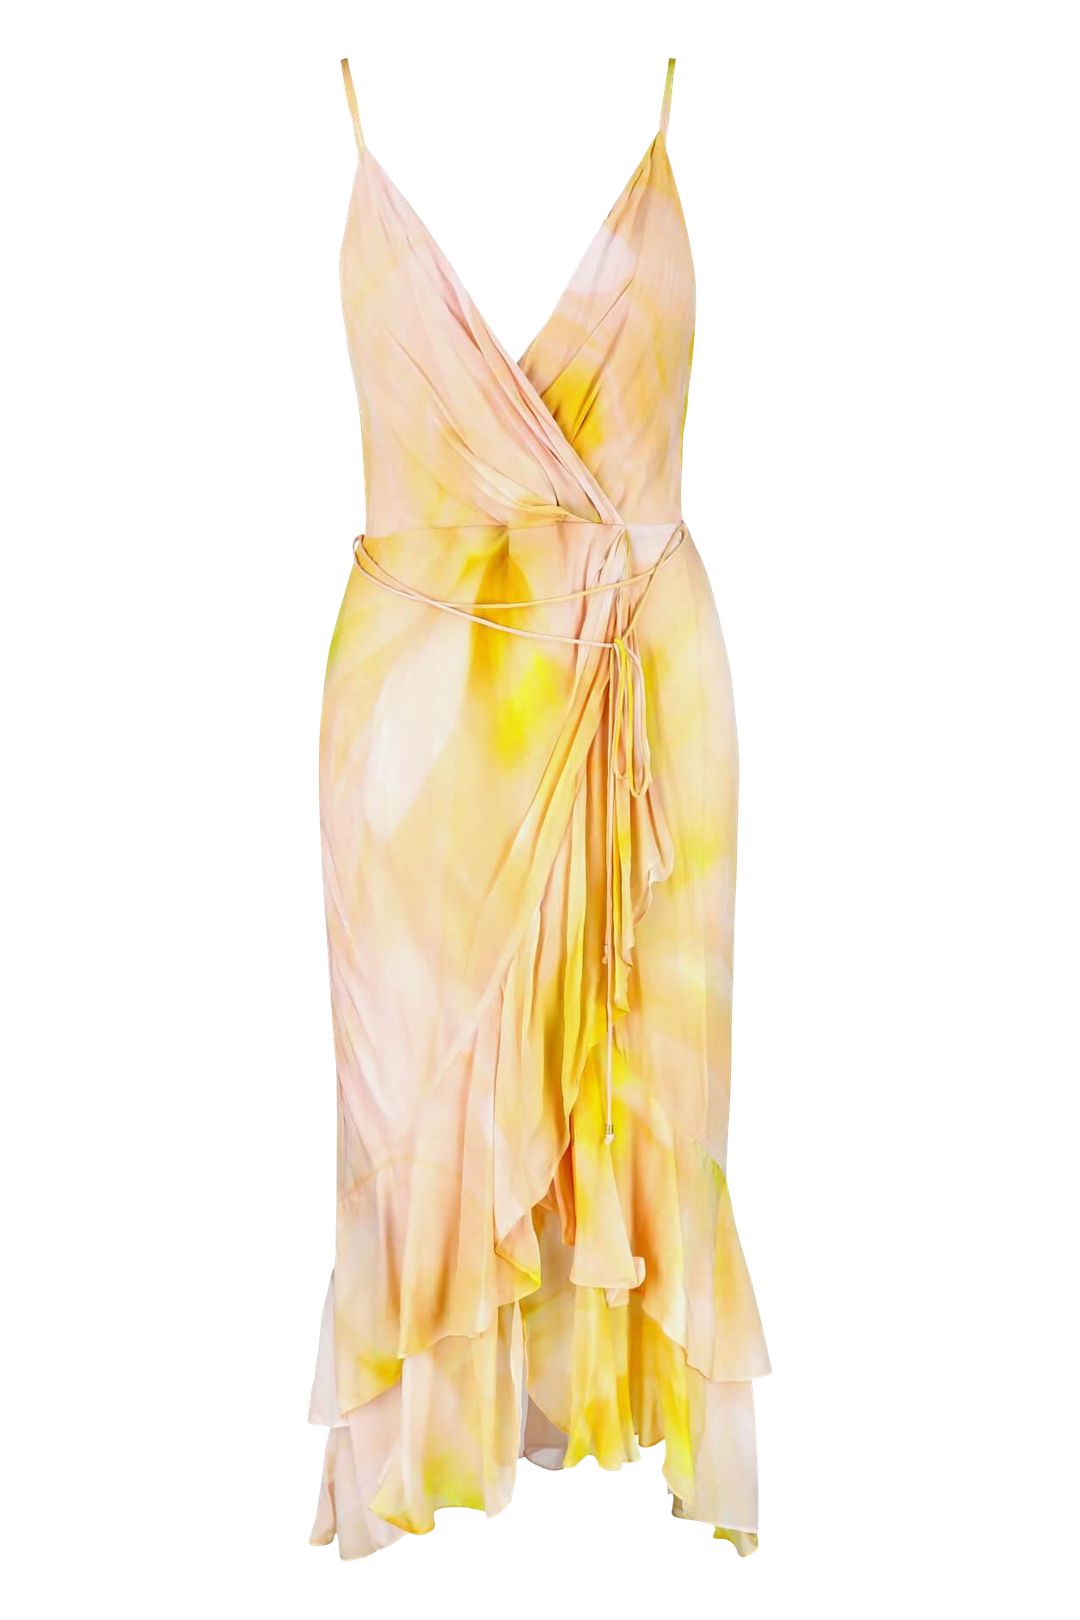 Buy Essence Waterfall Dress - MOS The Label | Reloop – RELOOP